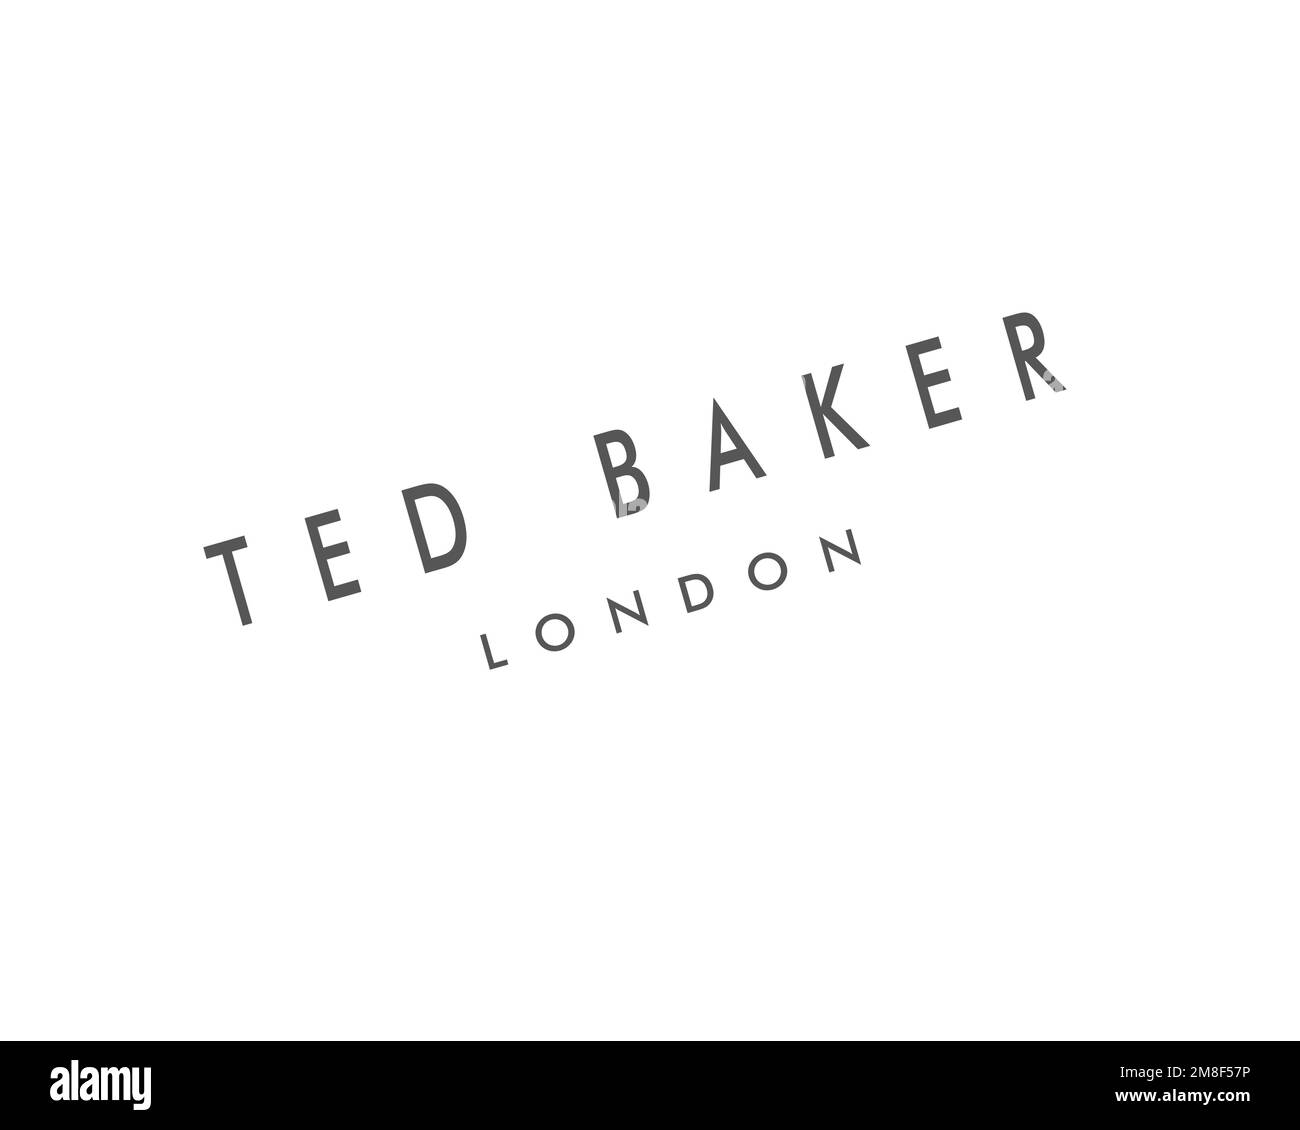 Ted Baker, logo pivoté, fond blanc Banque D'Images